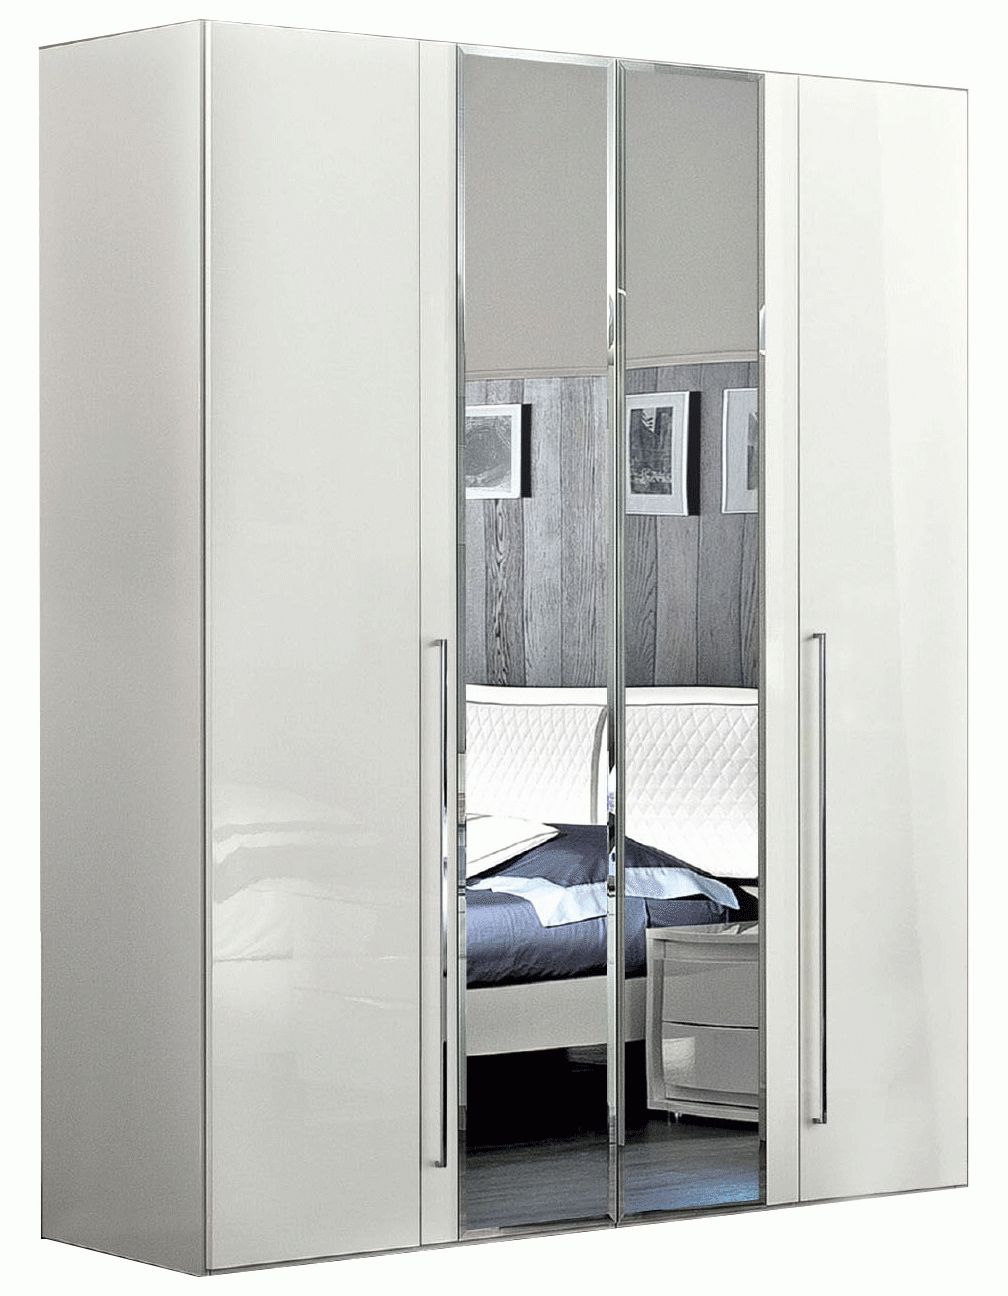 Dama Bianca 4 Door Glass Doors Wardrobe White, Wardrobes, Bedroom Furniture Intended For 4 Door White Wardrobes (View 13 of 15)